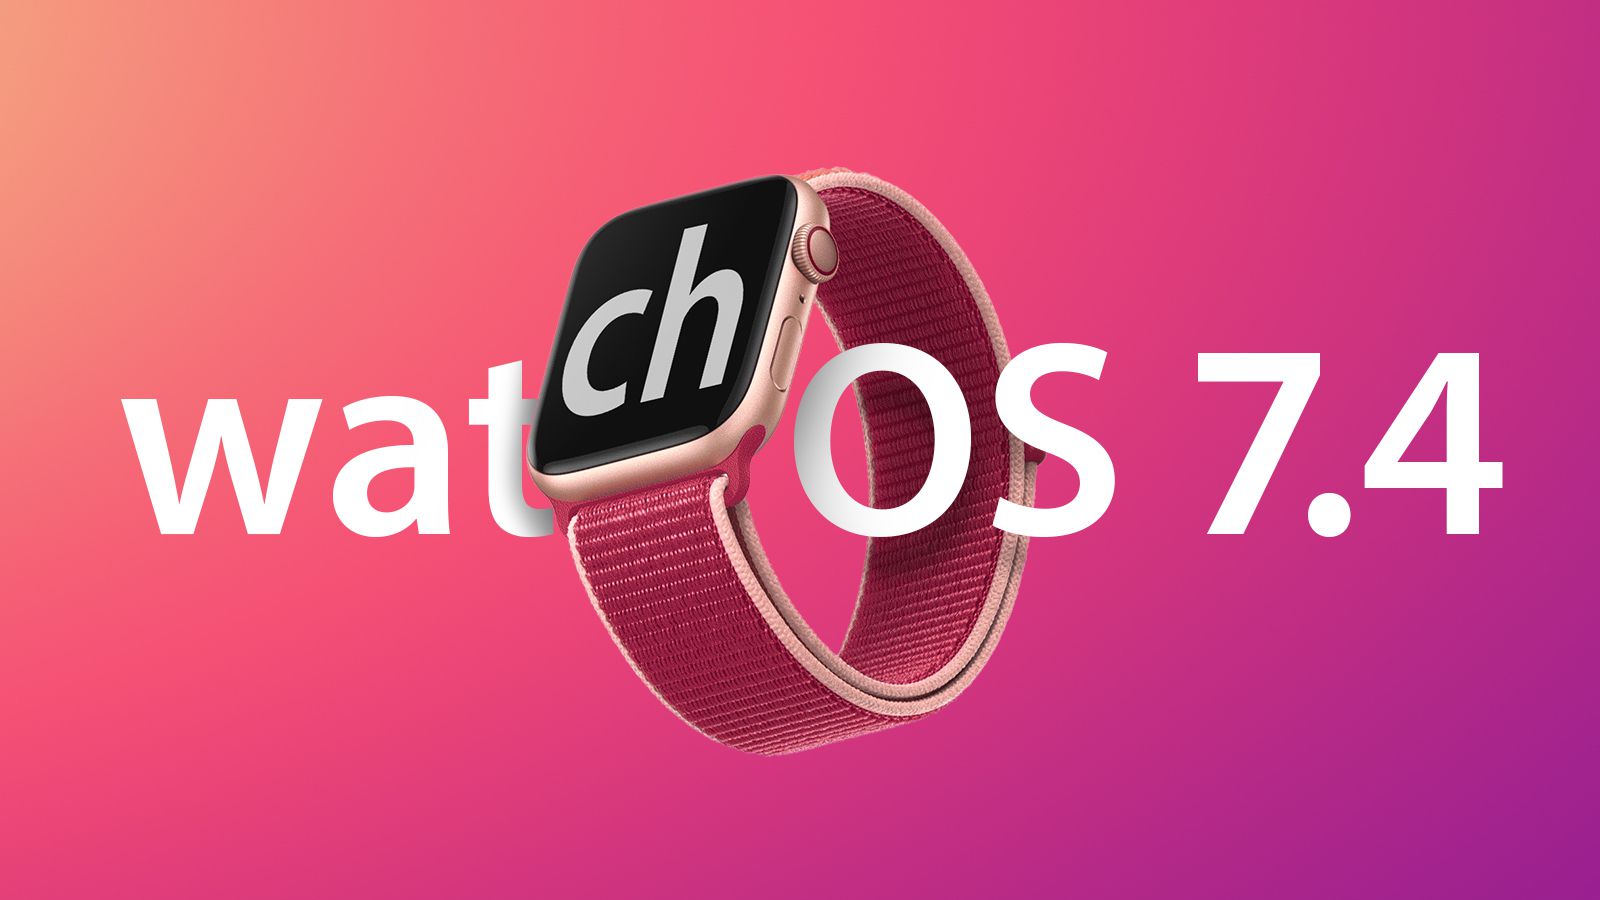 اپل سیستم عامل macOS Big Sur 11.3 و watchOS 7.4 را منتشر کرد